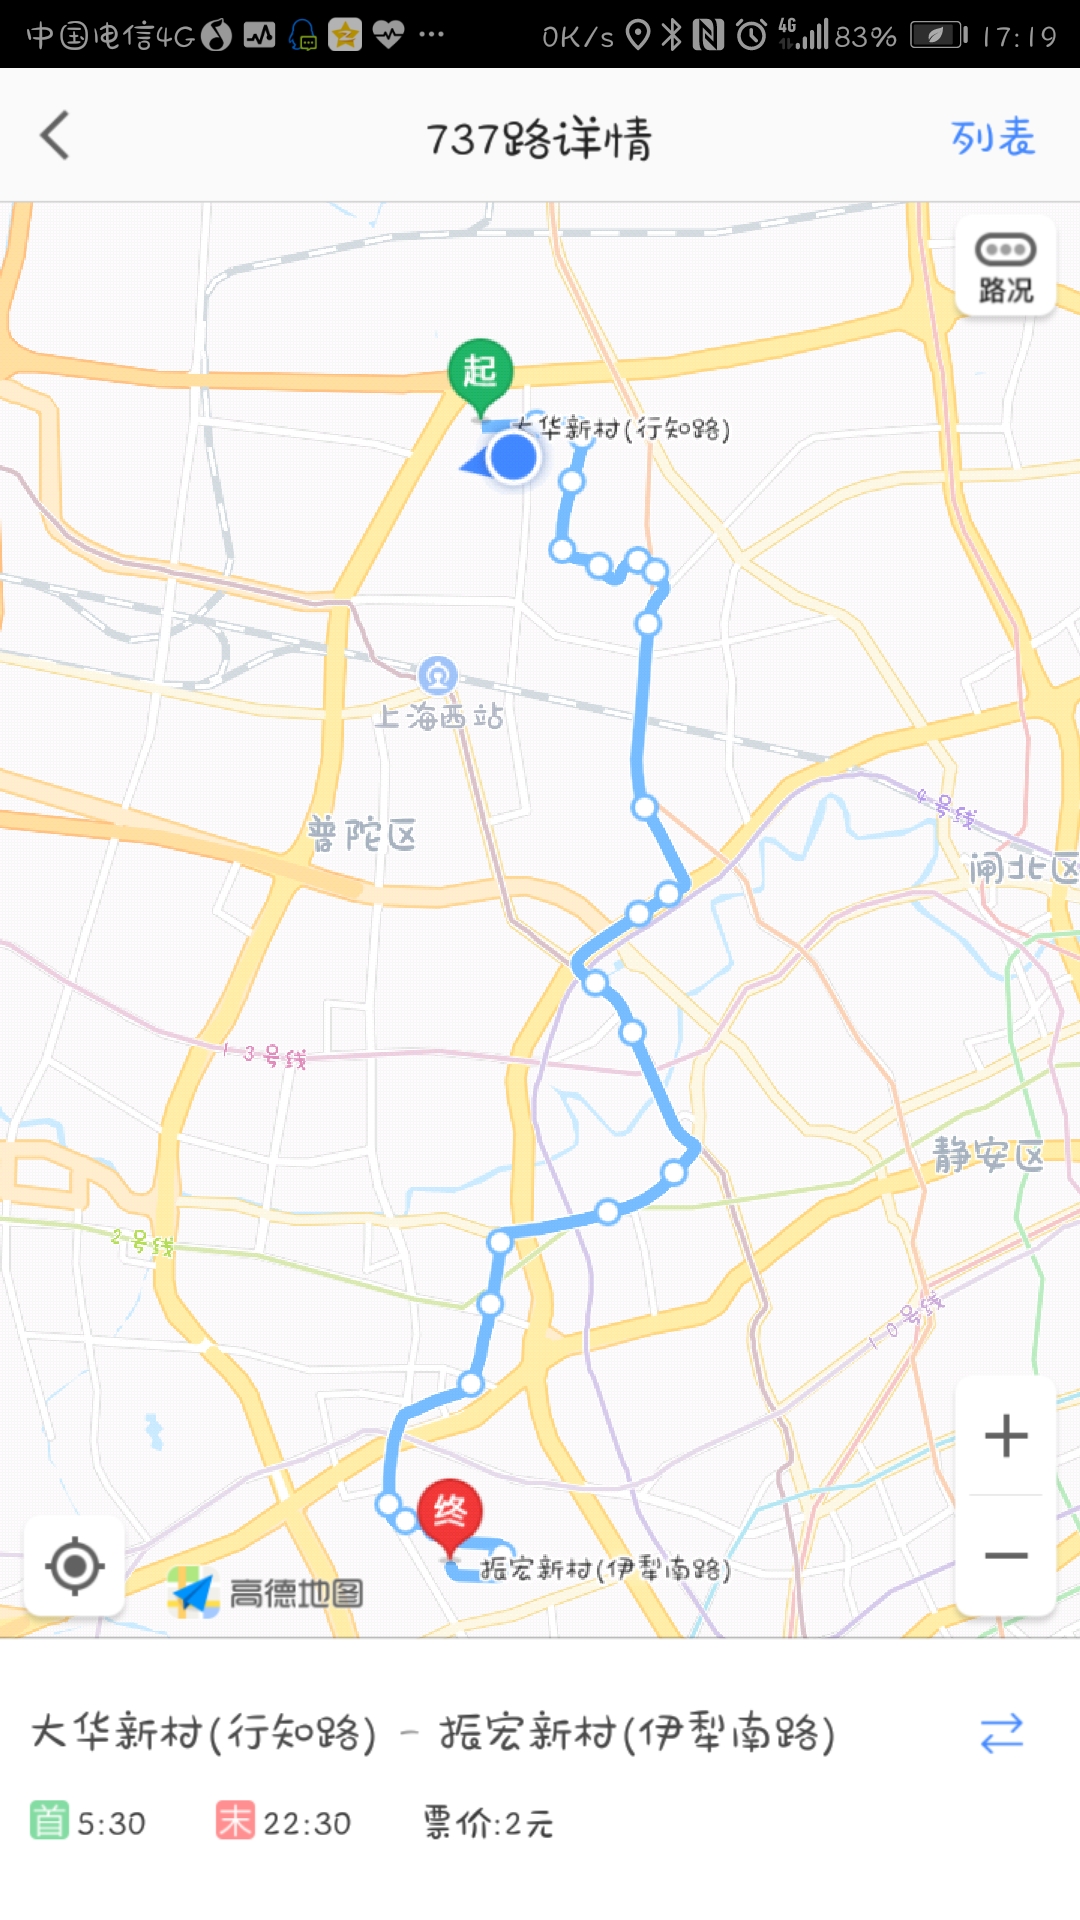 737路,上海巴士三公司六车队线路,全长17,高峰时段约5分钟一班车